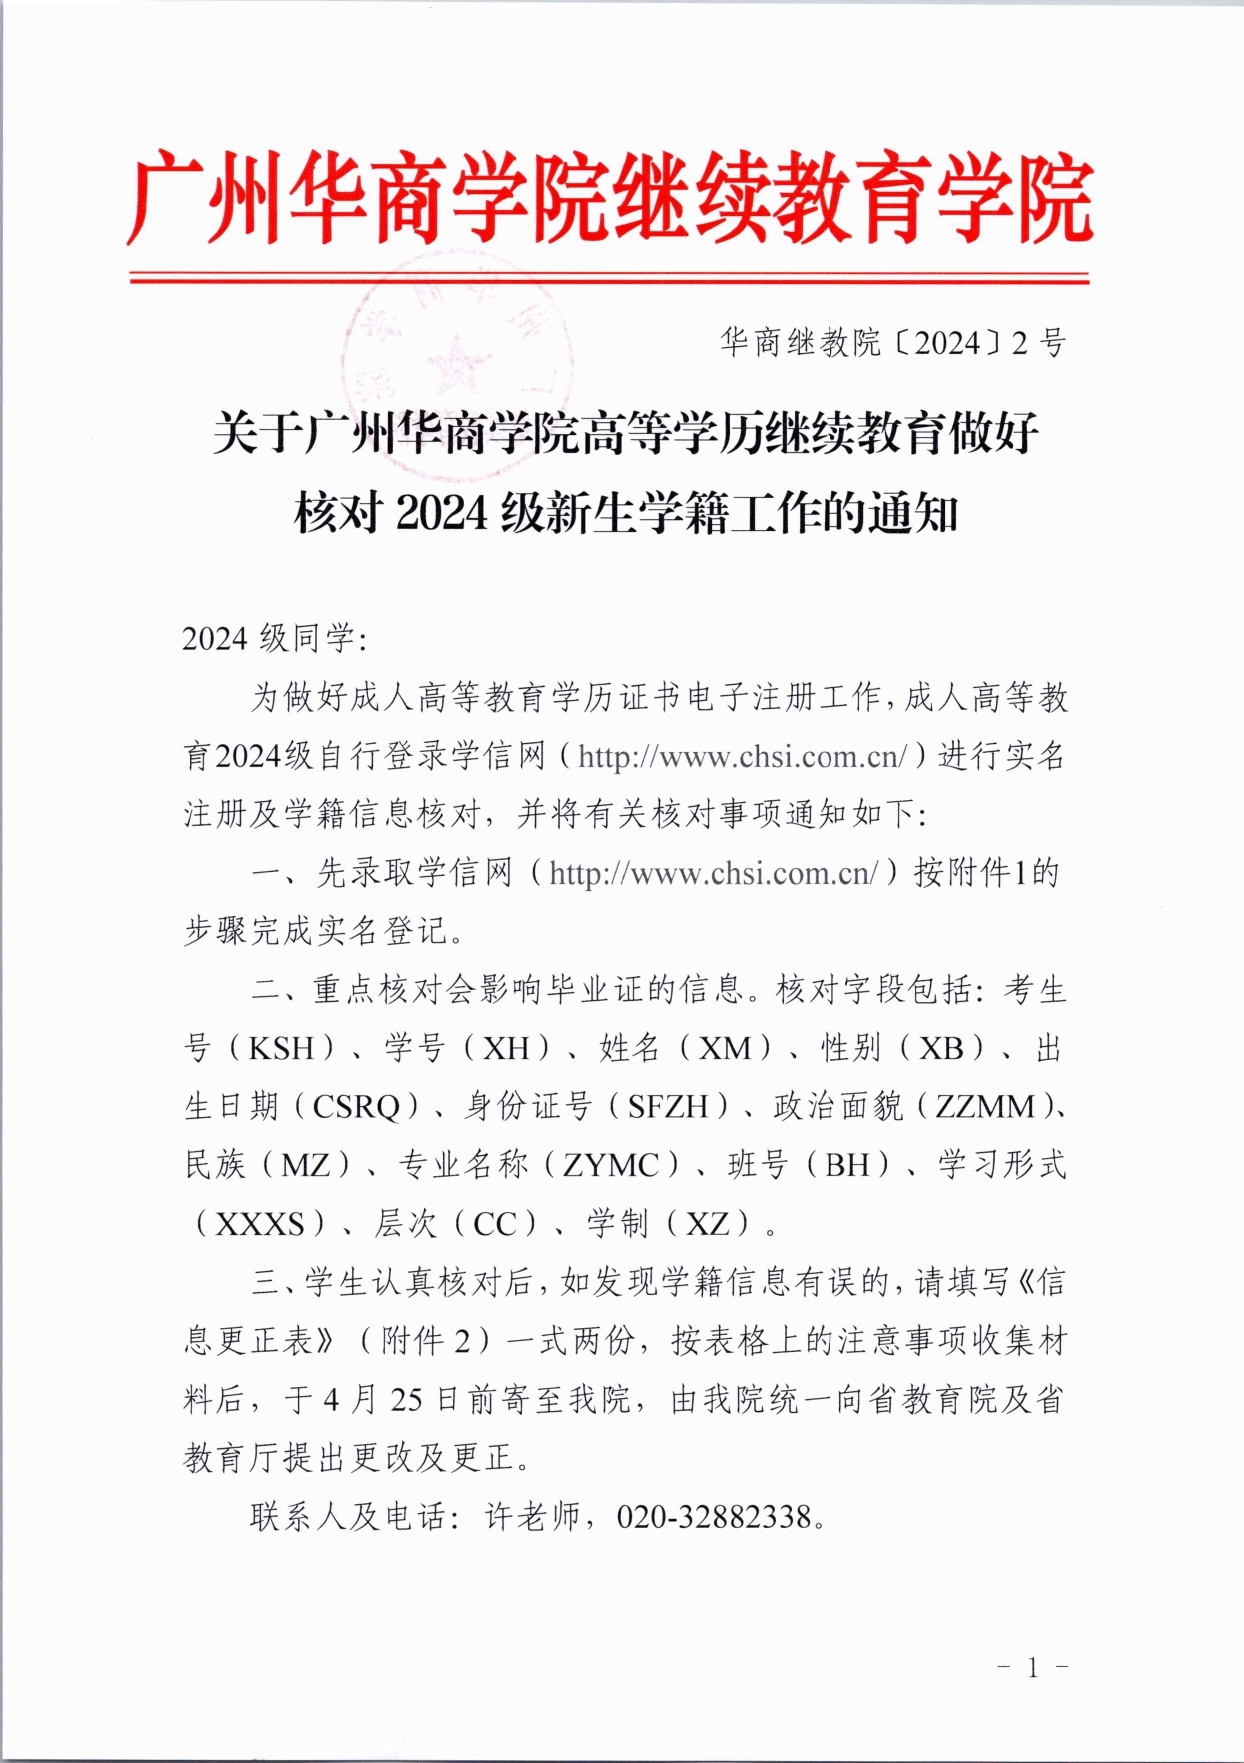 关于广州华商学院高等学历继续教育做好核对 2024 级新生学籍工作的通知 - 红头_page-0001